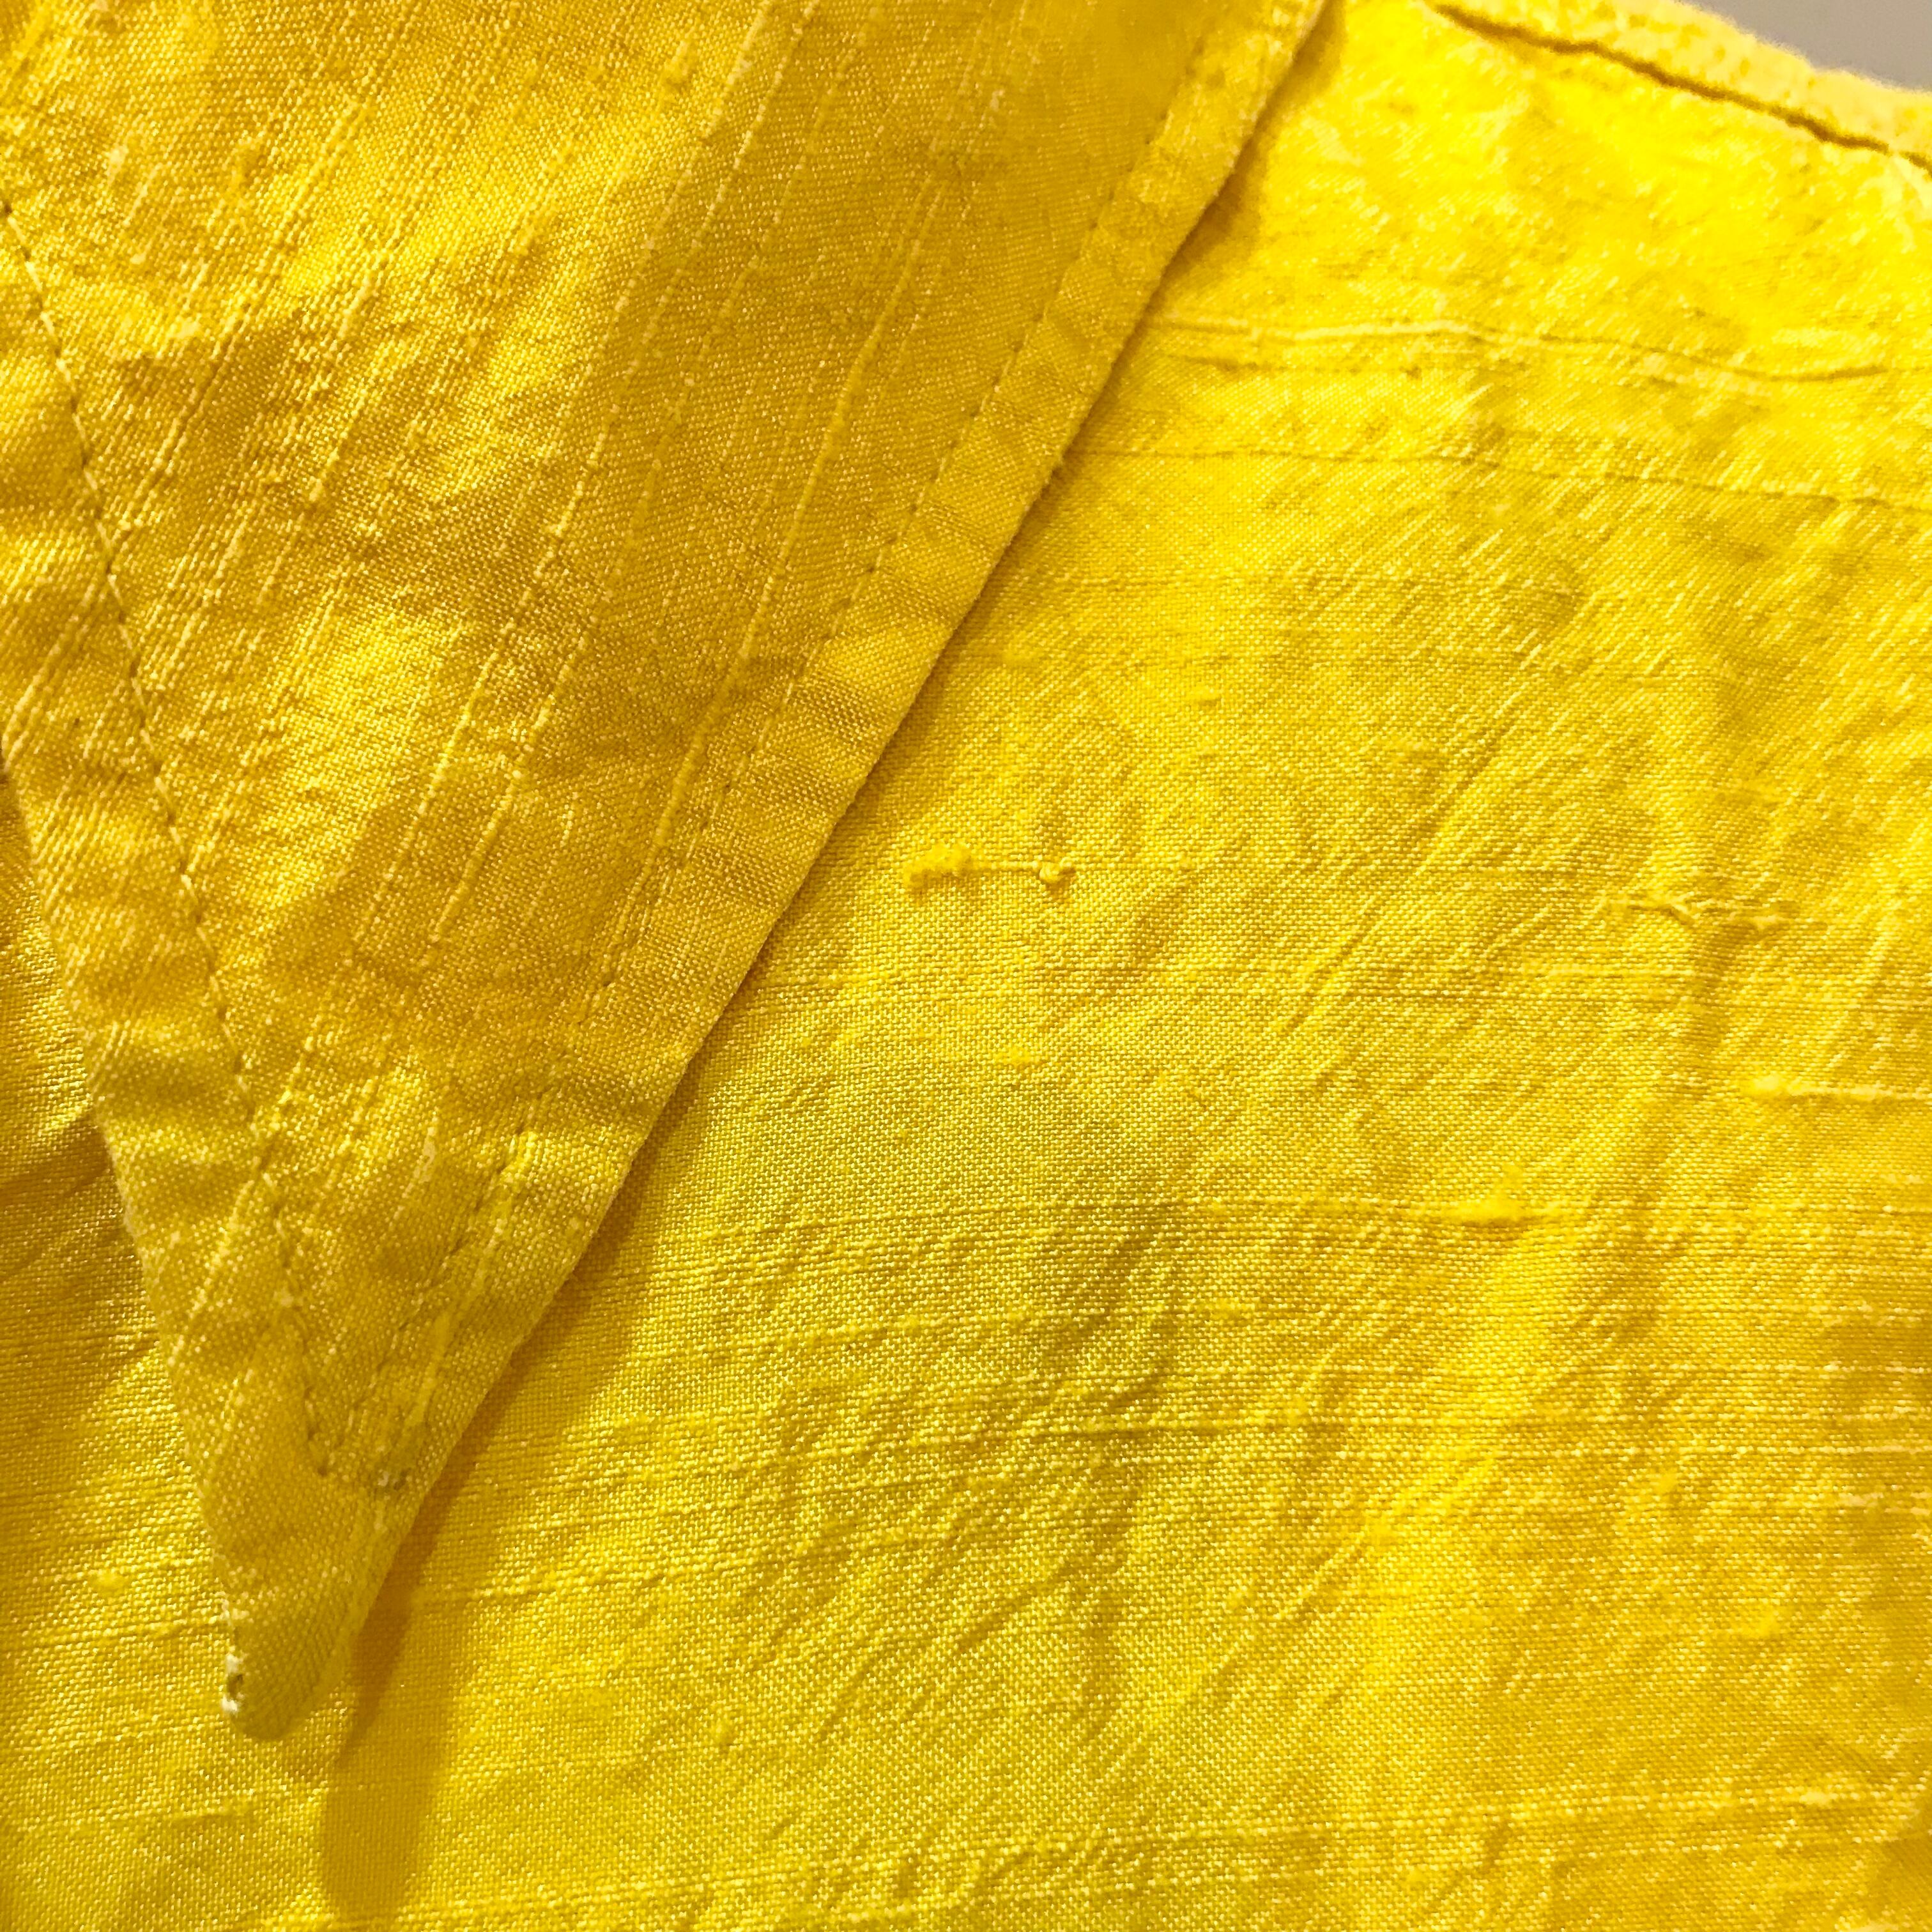 D&G/dolce&gabbana/tops/shirt/38/yellow/ドルチェアンドガッパーナ